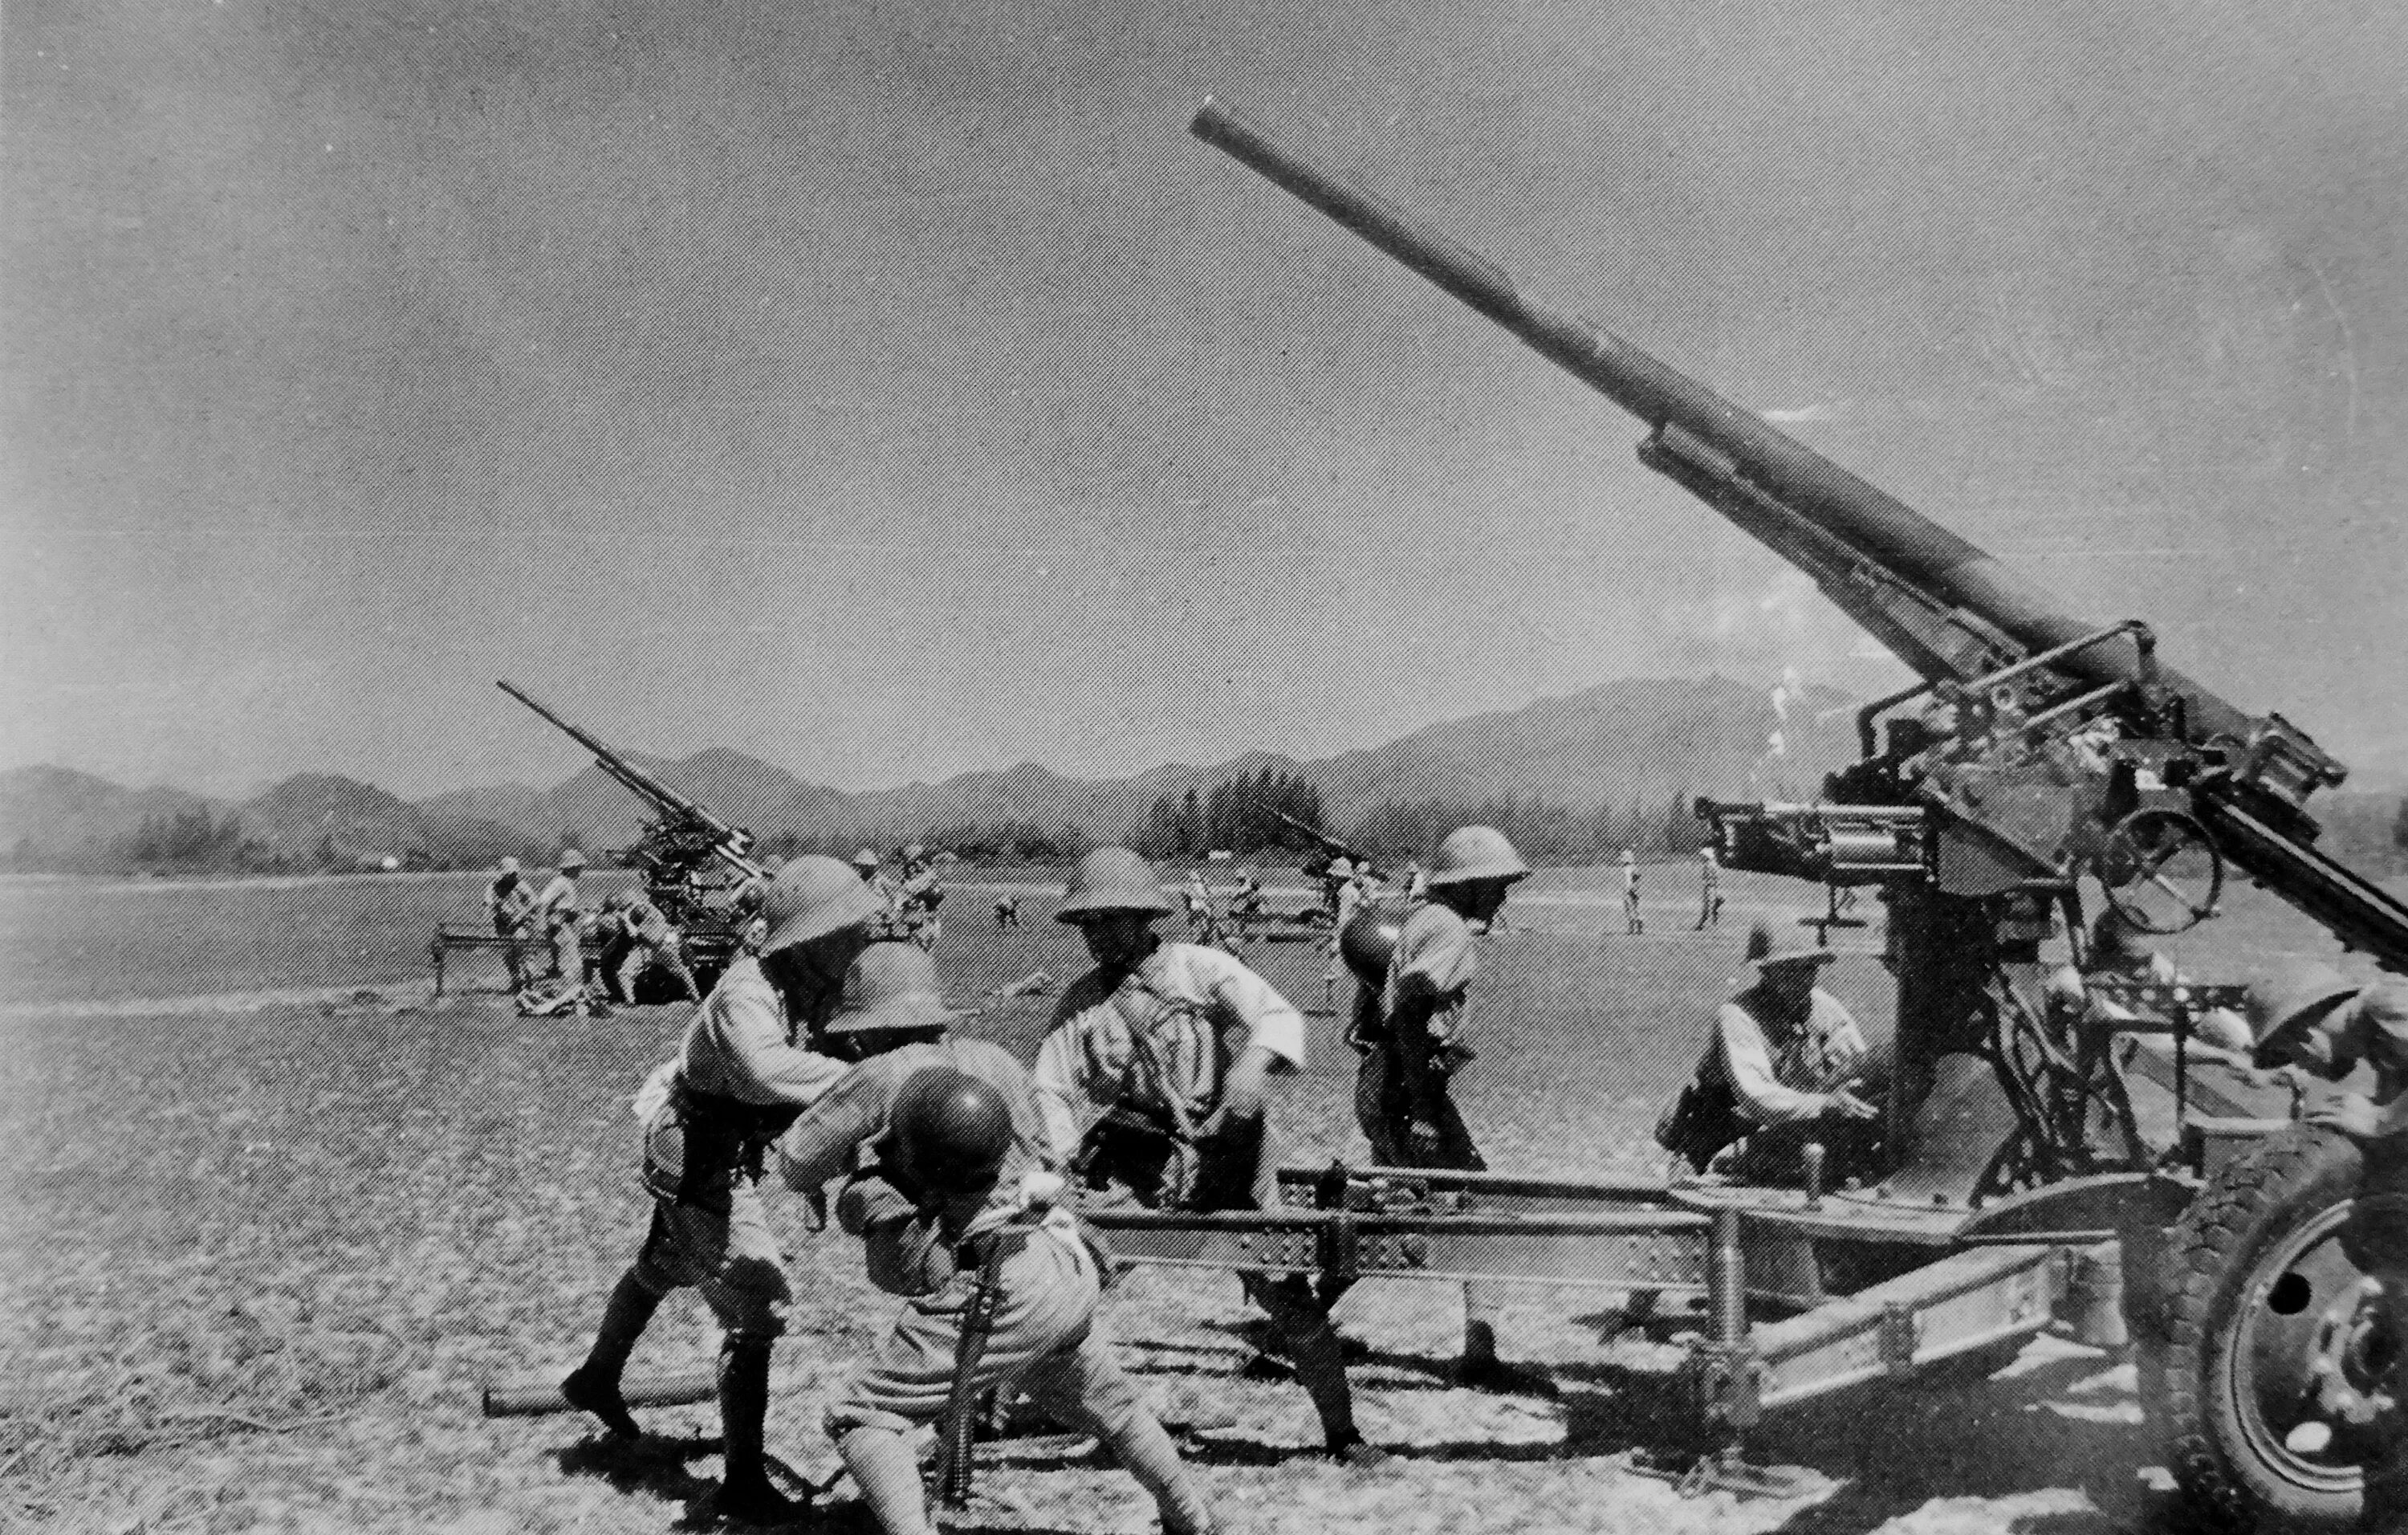 Только японские зенитные пушки все время. Зенитная 75-мм пушка Type 88. "75-Мм зенитная пушка Тип «88» Япония". 75-Мм зенитное орудие Тип 88. Японская зенитная артиллерия второй мировой войны.